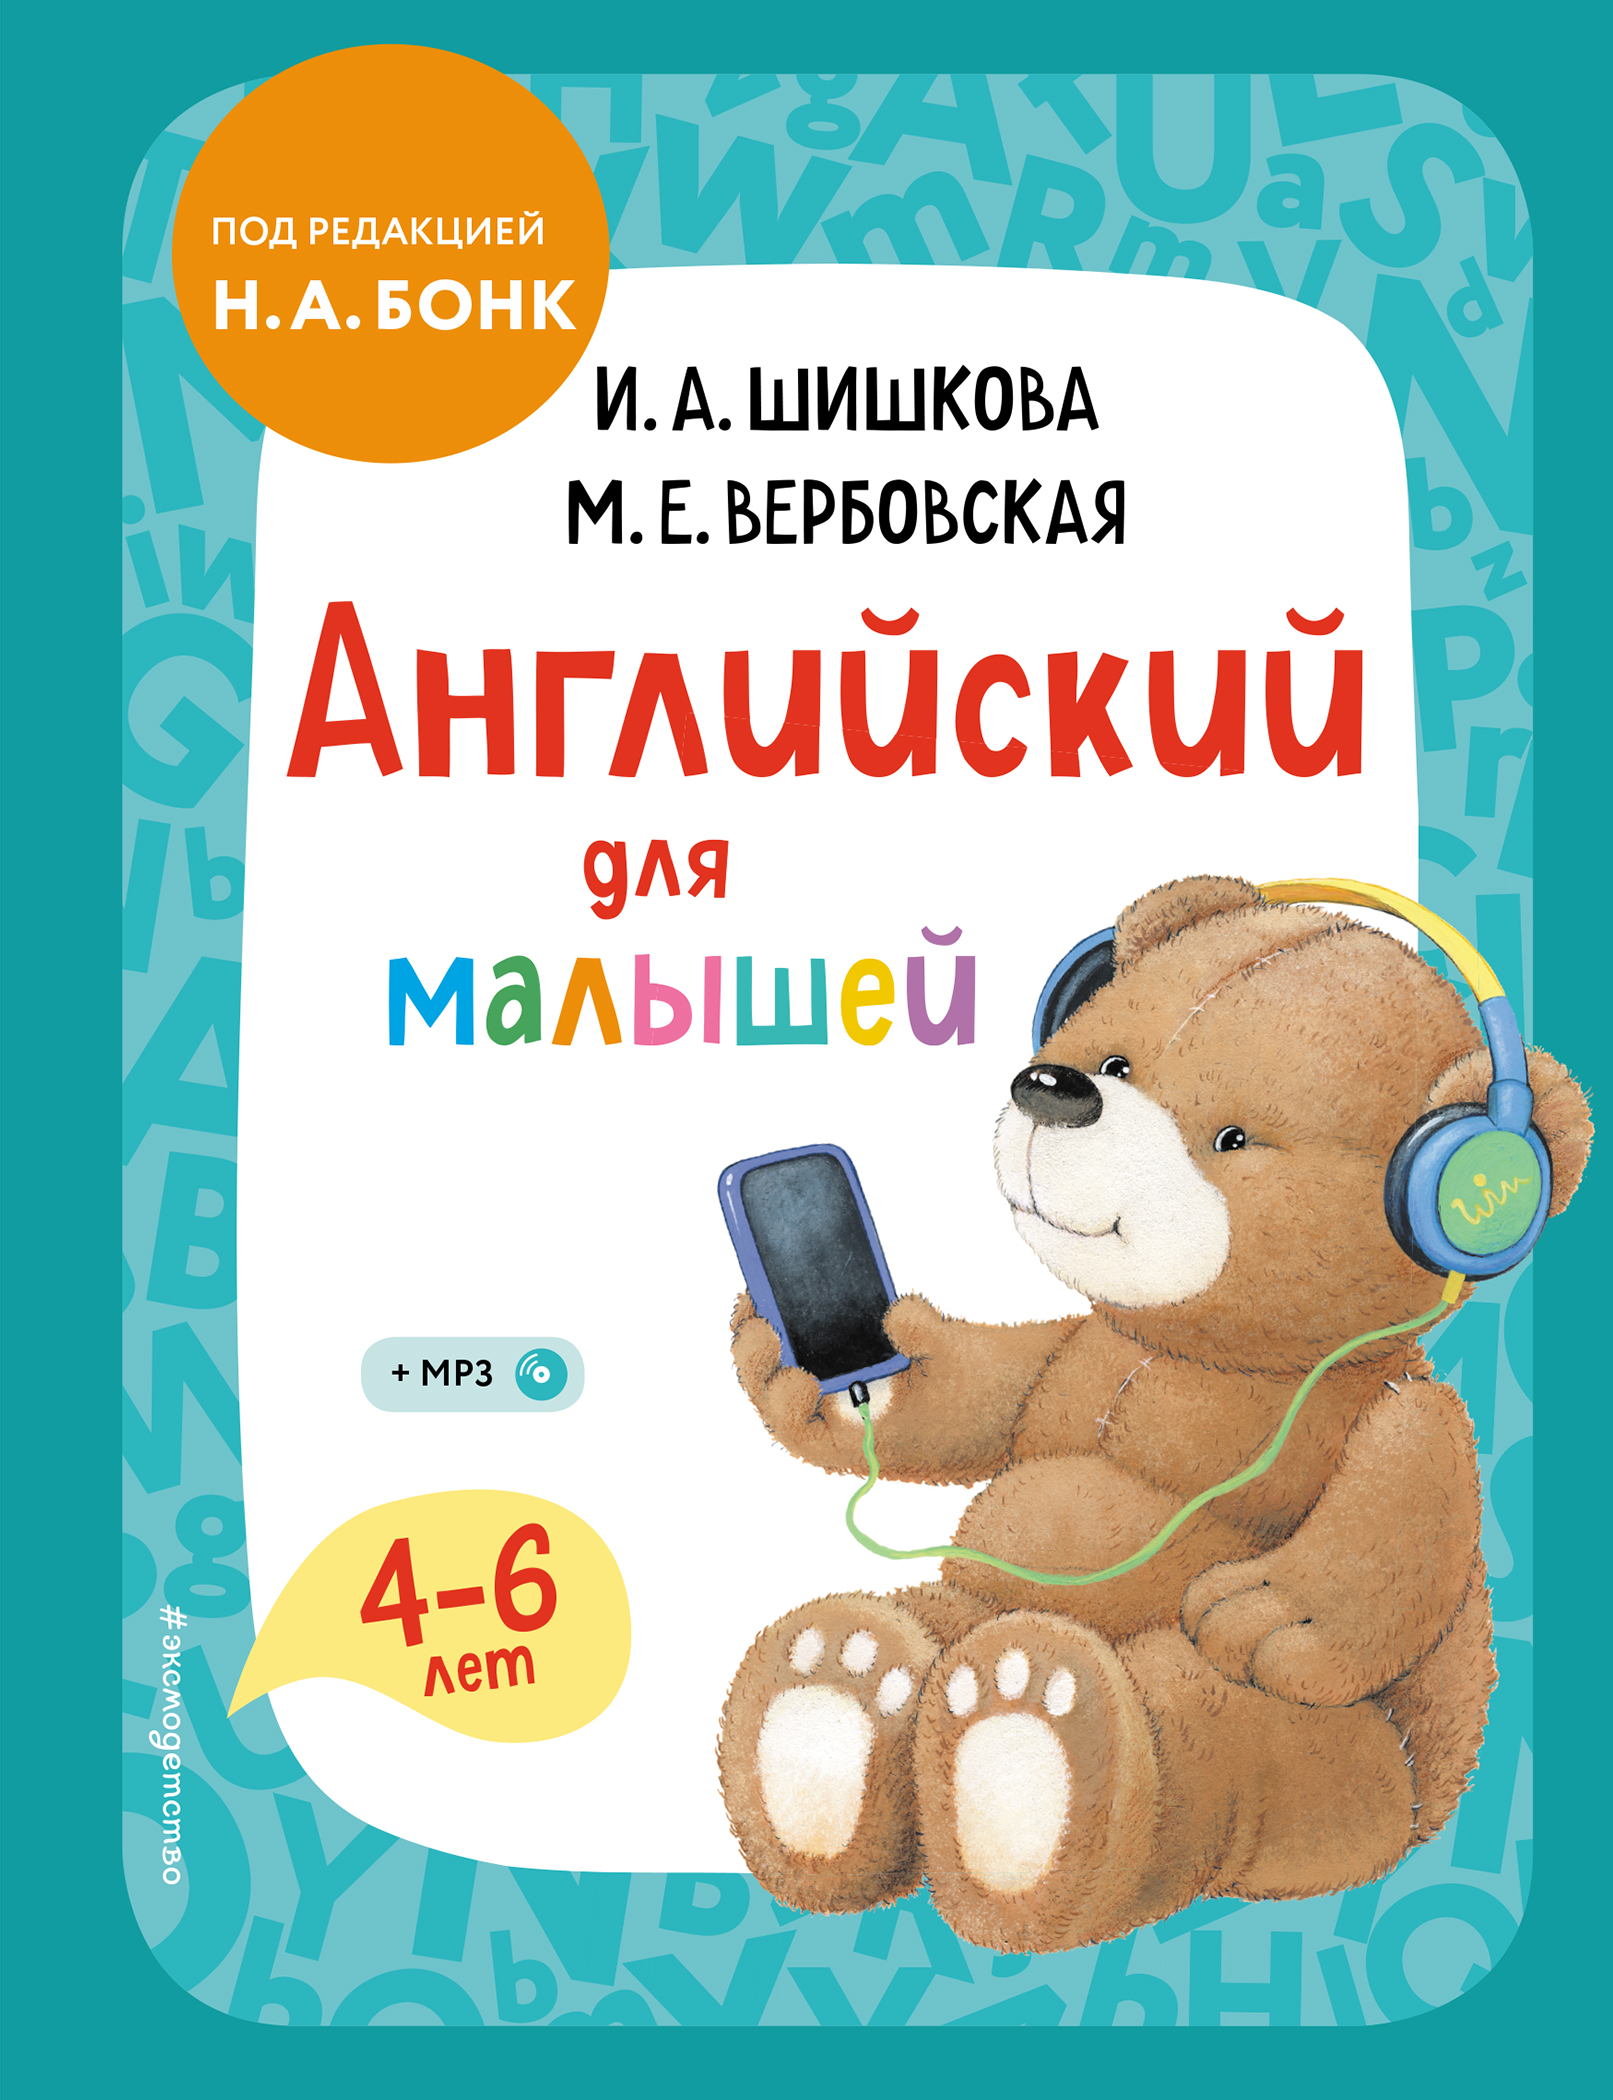 Вербовская М.Е., Шишкова И.А. Английский для малышей. Учебник + компакт-диск mp3 